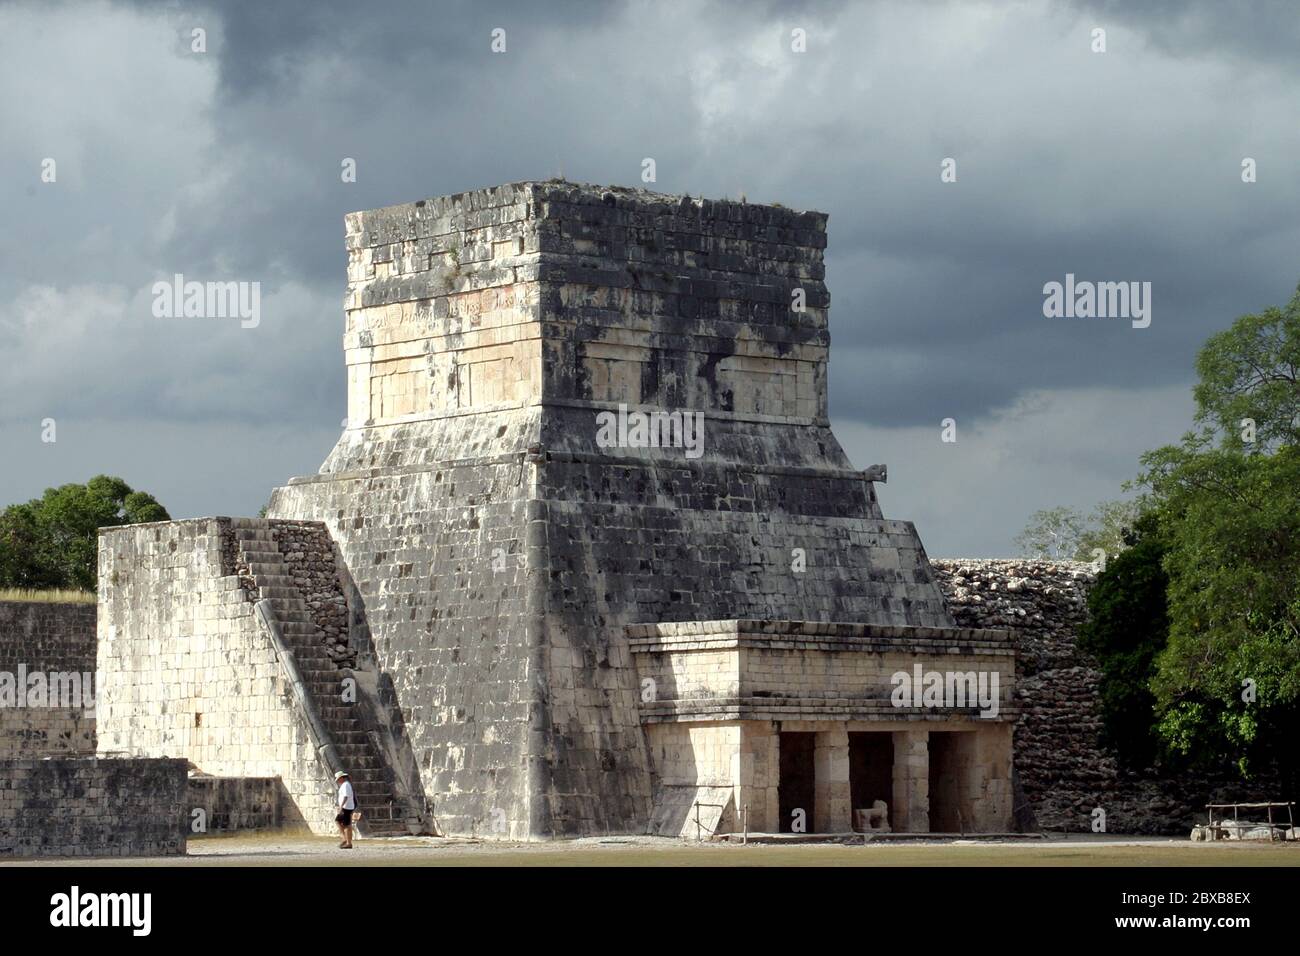 Zona arqueologica de Chichen Itza Zona arqueológica   Chichén ItzáChichén Itzá maya: (Chichén) Boca del pozo;   de los (Itzá) brujos de agua.   Es uno de los principales sitios arqueológicos de la   península de Yucatán, en México, ubicado en el municipio de Tinum.  *Photo:©Francisco*Morales/DAMMPHOTO.COM/NORTEPHOTO Stock Photo